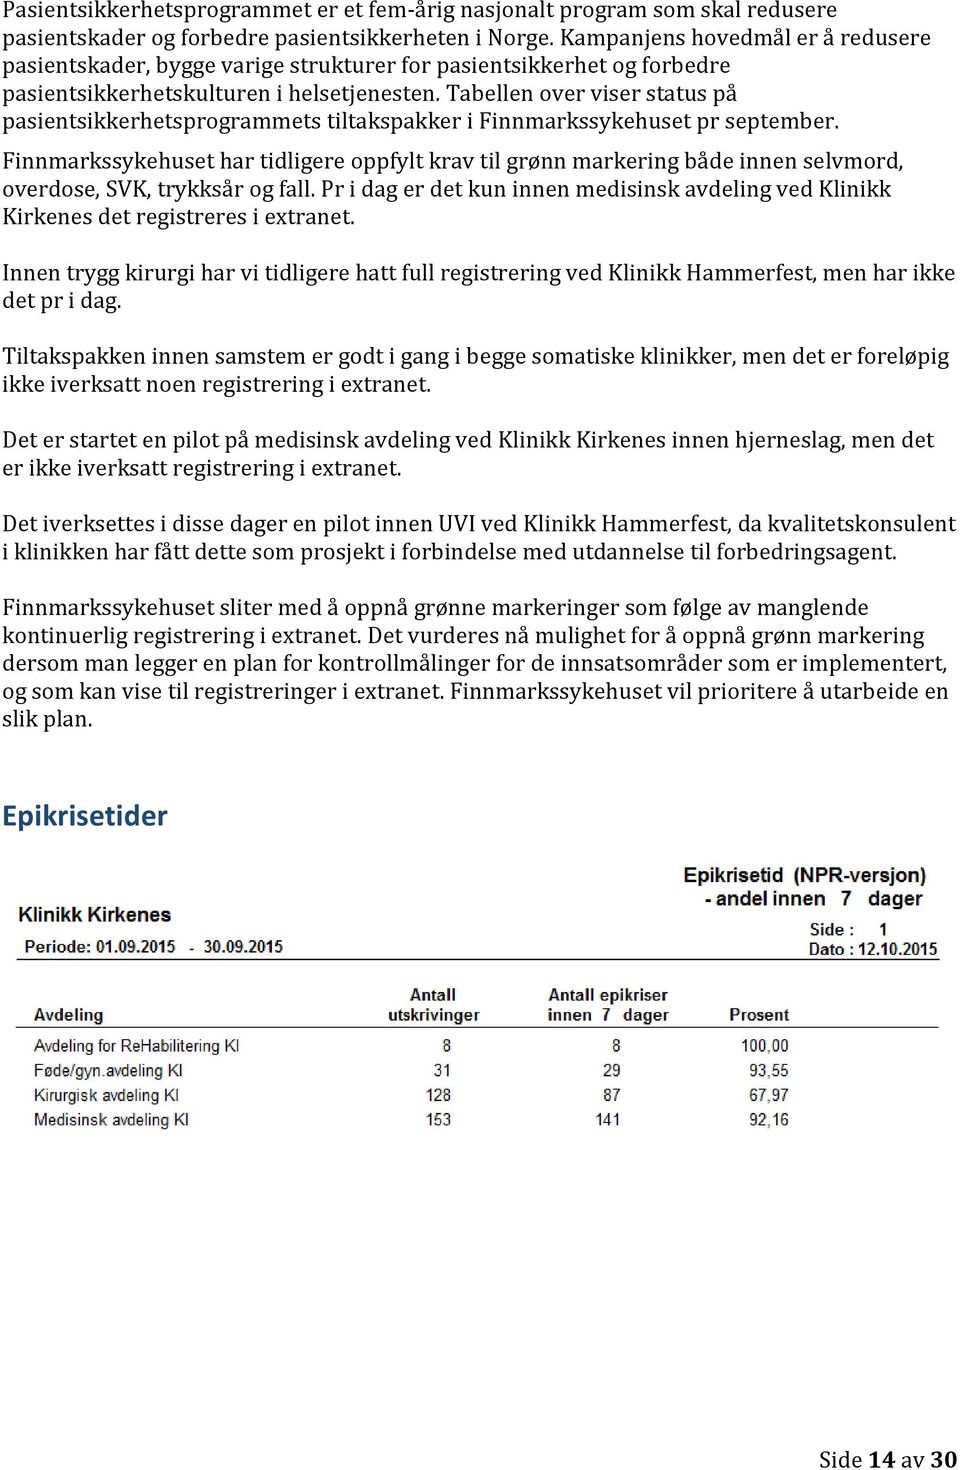 Tabellen over viser status på pasientsikkerhetsprogrammets tiltakspakker i Finnmarkssykehuset pr september.